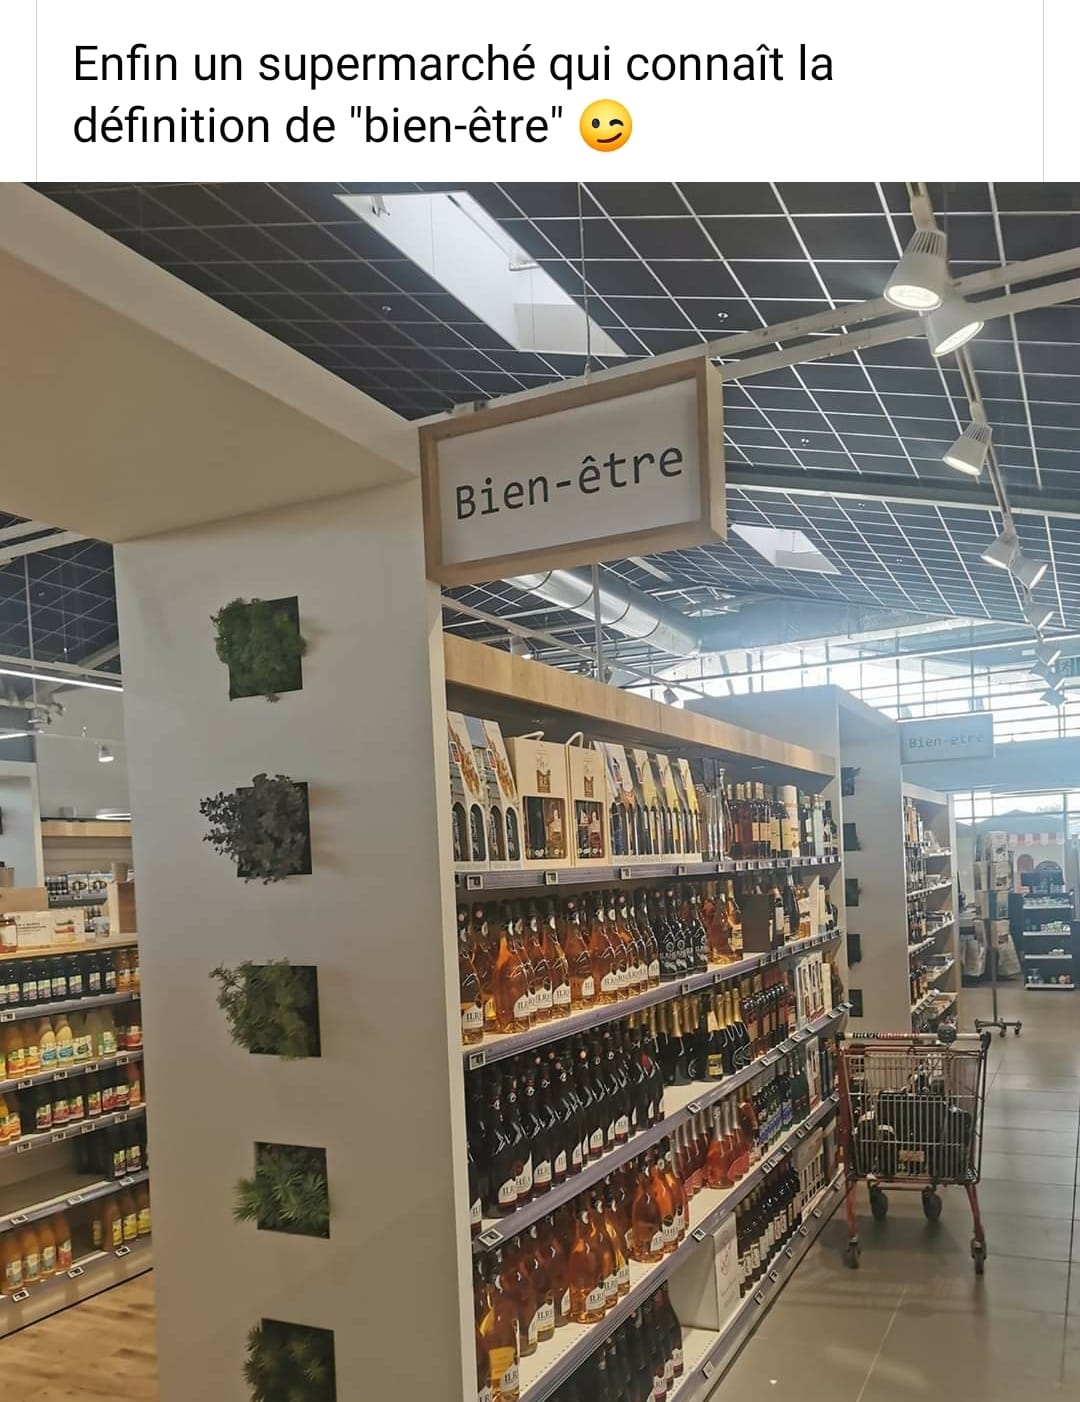 Enfin un supermarché qui connaît la définition de bien-être